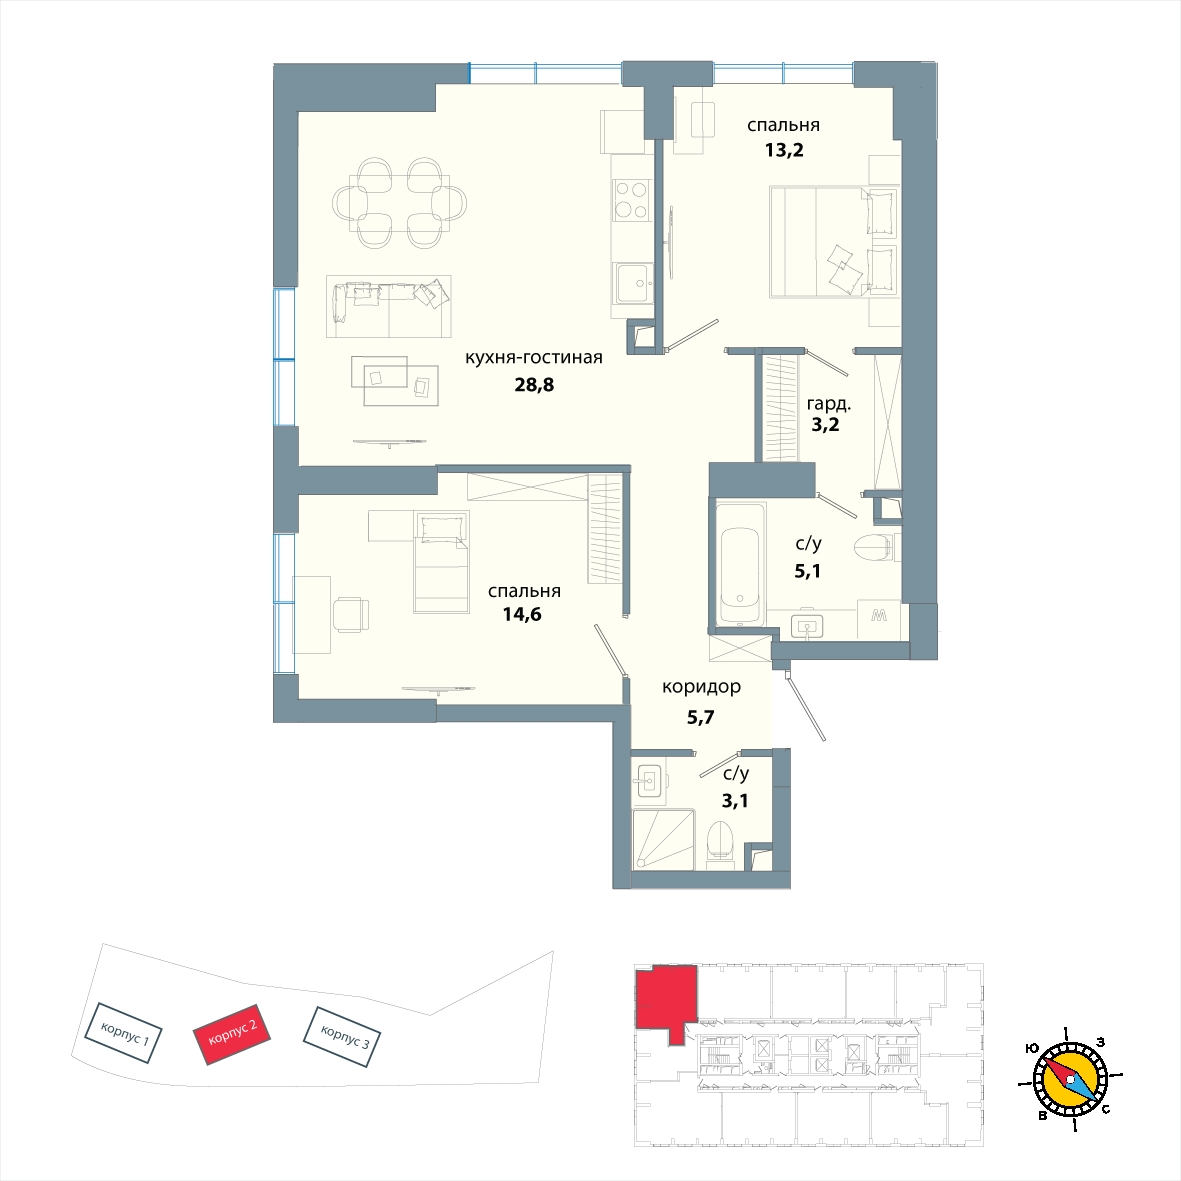 1-комнатная квартира с отделкой в ЖК Южная Битца на 23 этаже в 9 секции. Сдача в 4 кв. 2021 г.